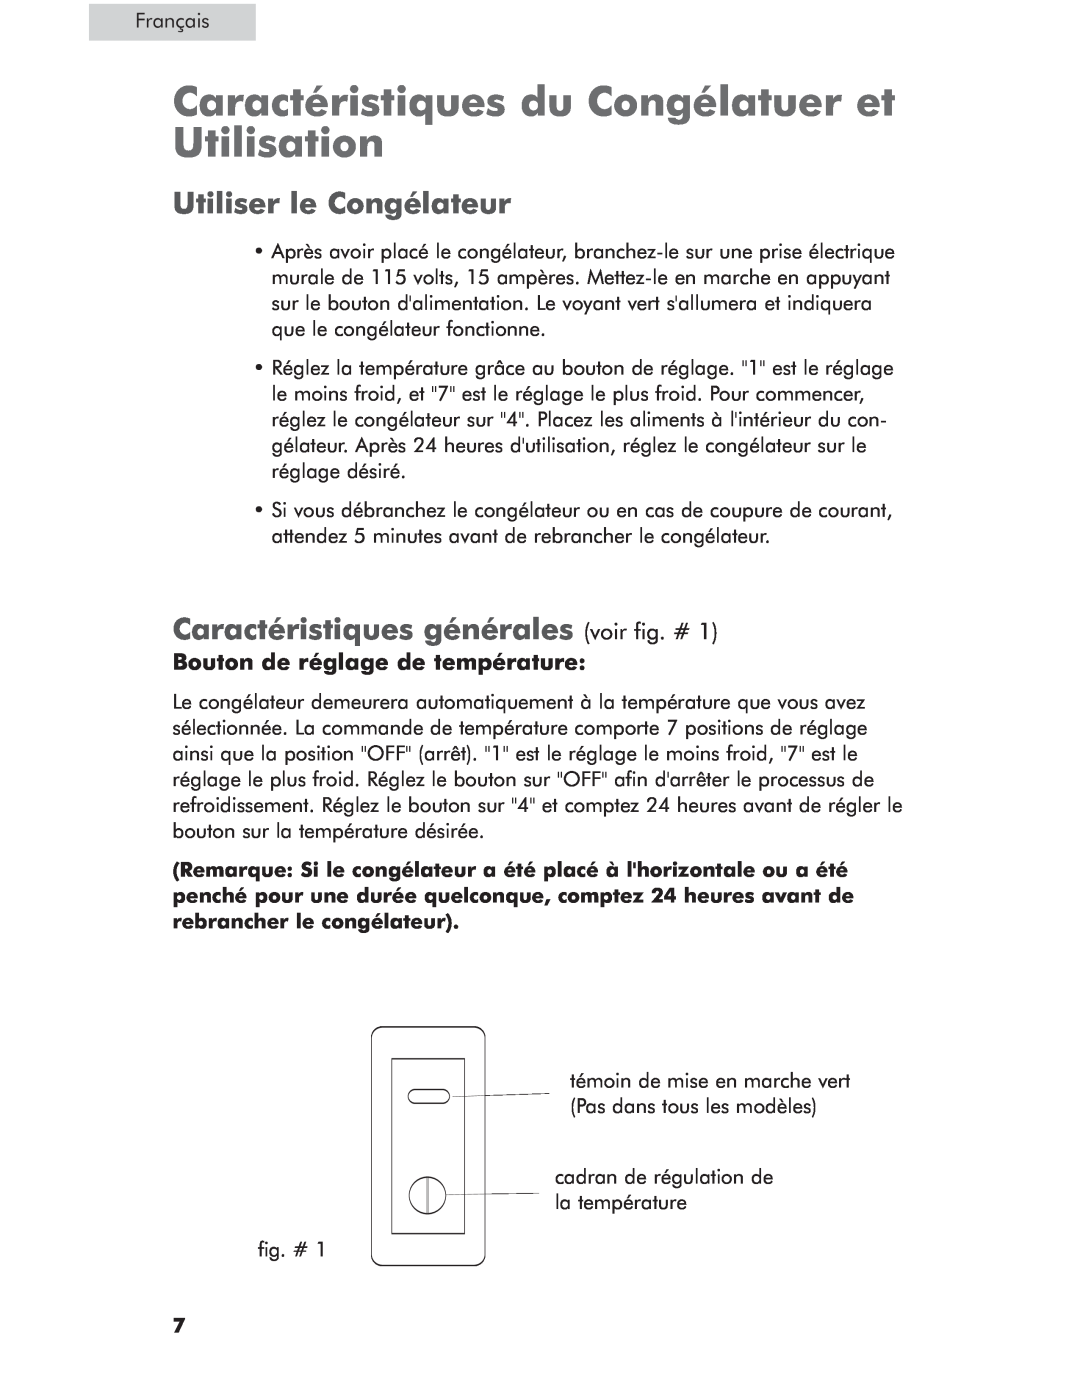 Haier HCM071AW Caractéristiques du Congélatuer et Utilisation, Utiliser le Congélateur, Bouton de réglage de température 